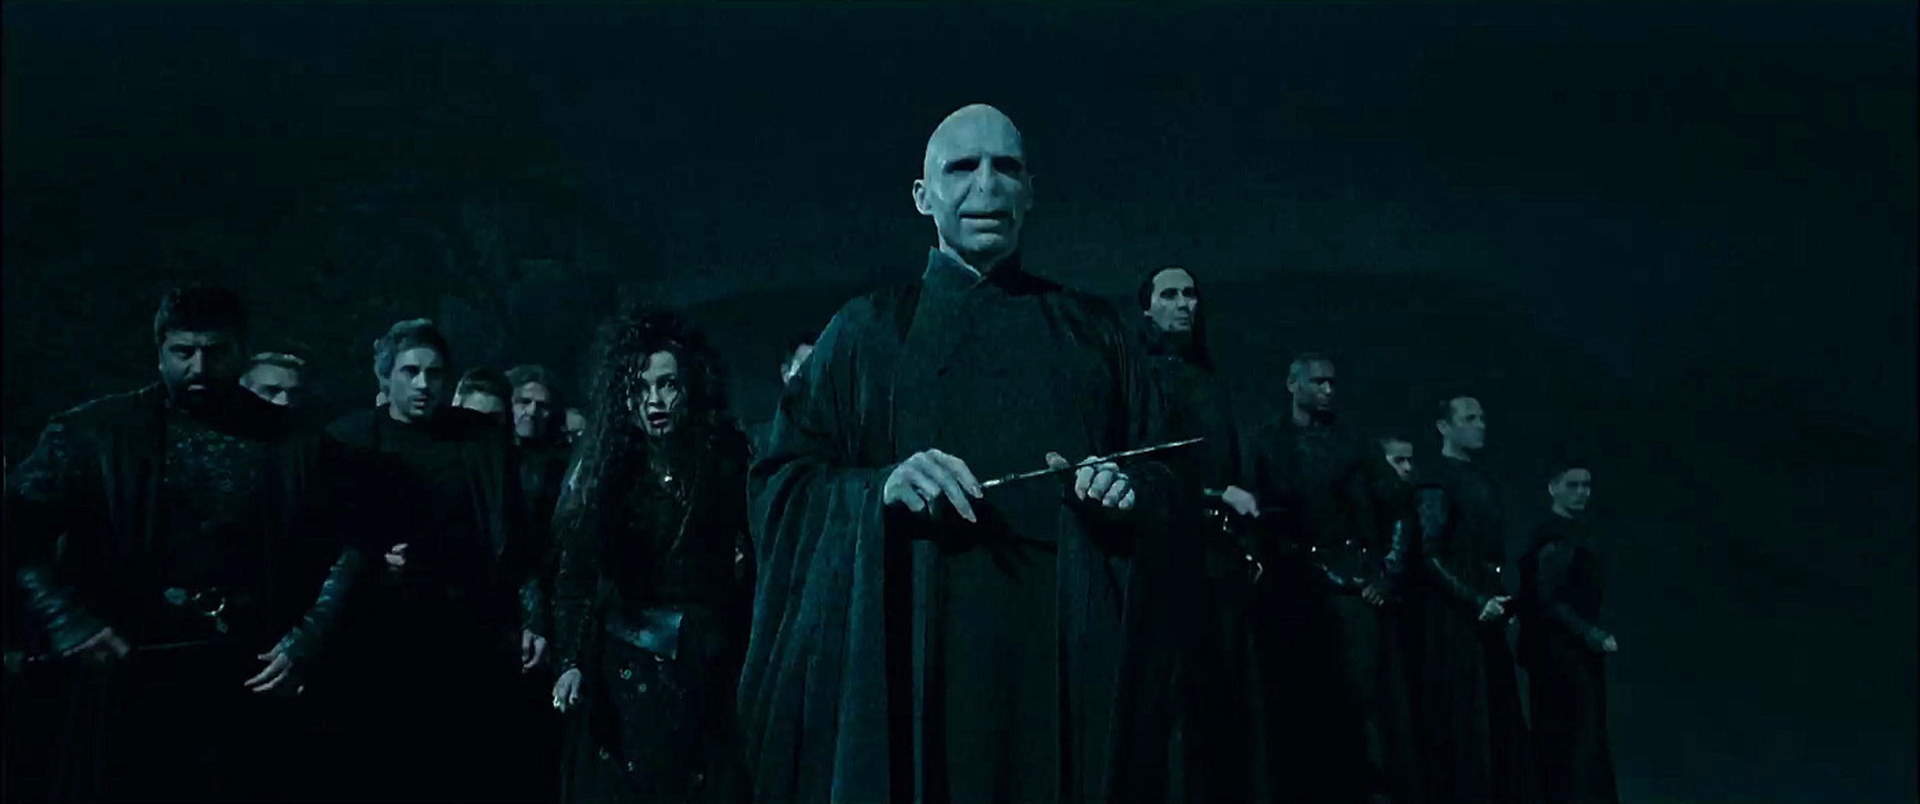 Harry Potter 7.1 und die Heiligtümer des Todes (Teil 1) - Szenenbild 4 von 23